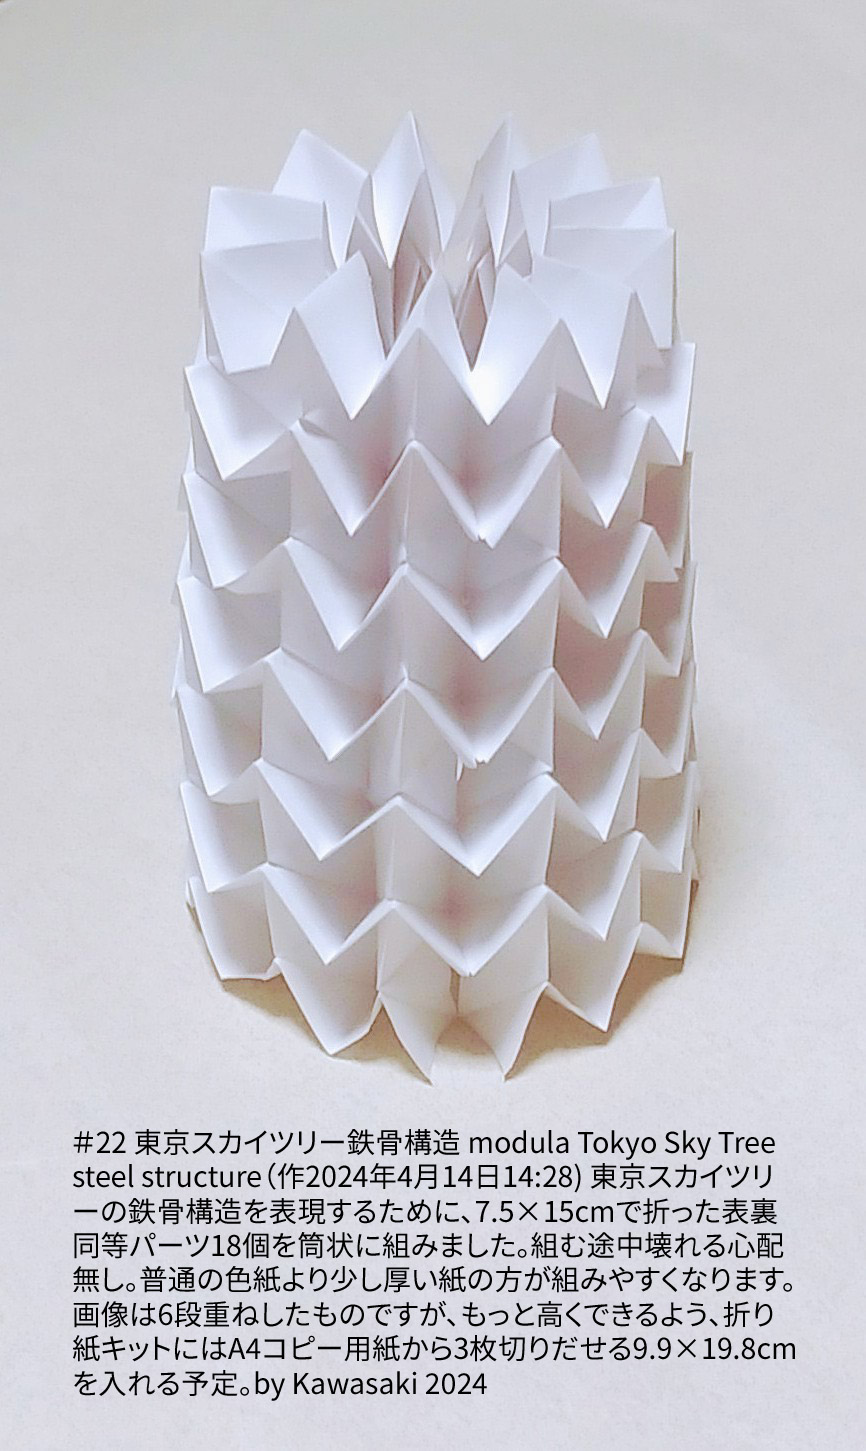 2024/04/14(Sun) 16:51「＃22 東京スカイツリー鉄骨構造 modula Tokyo Sky Tree steel structure（作2024年4月14日14:28) 」川崎敏和 T.Kawasaki
（創作者 Author：川崎敏和 T.Kawasaki,　製作者 Folder：川崎敏和 T.Kawasaki ,　出典 Source：2024年川崎敏和折り紙キット＃22）
 東京スカイツリーの鉄骨構造を表現するために、7.5×15cmで折った表裏同等パーツ18個を筒状に組みました。組む途中壊れる心配無し。普通の色紙より少し厚い紙の方が組みやすくなります。画像は6段重ねしたものですが、もっと高くできるよう、折り紙キットにはA4コピー用紙から3枚切りだせる9.9×19.8cmを入れる予定。by Kawasaki 2024